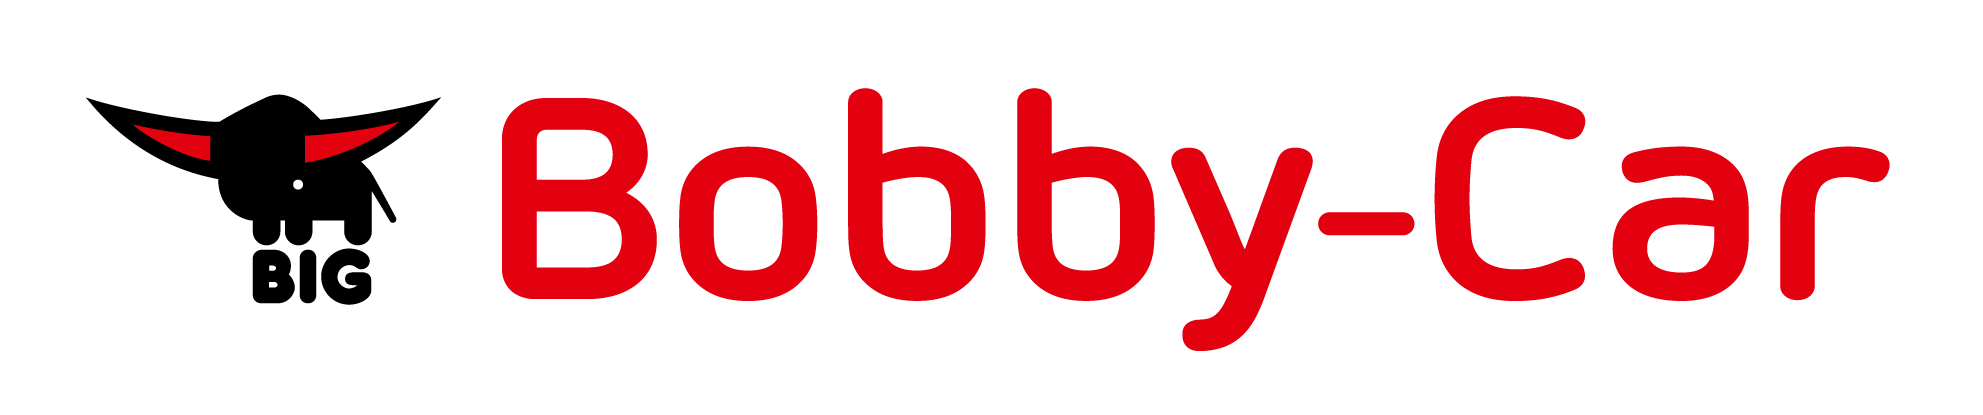 BIG-Bobby-Car_PNG_72dpi_1983x415px